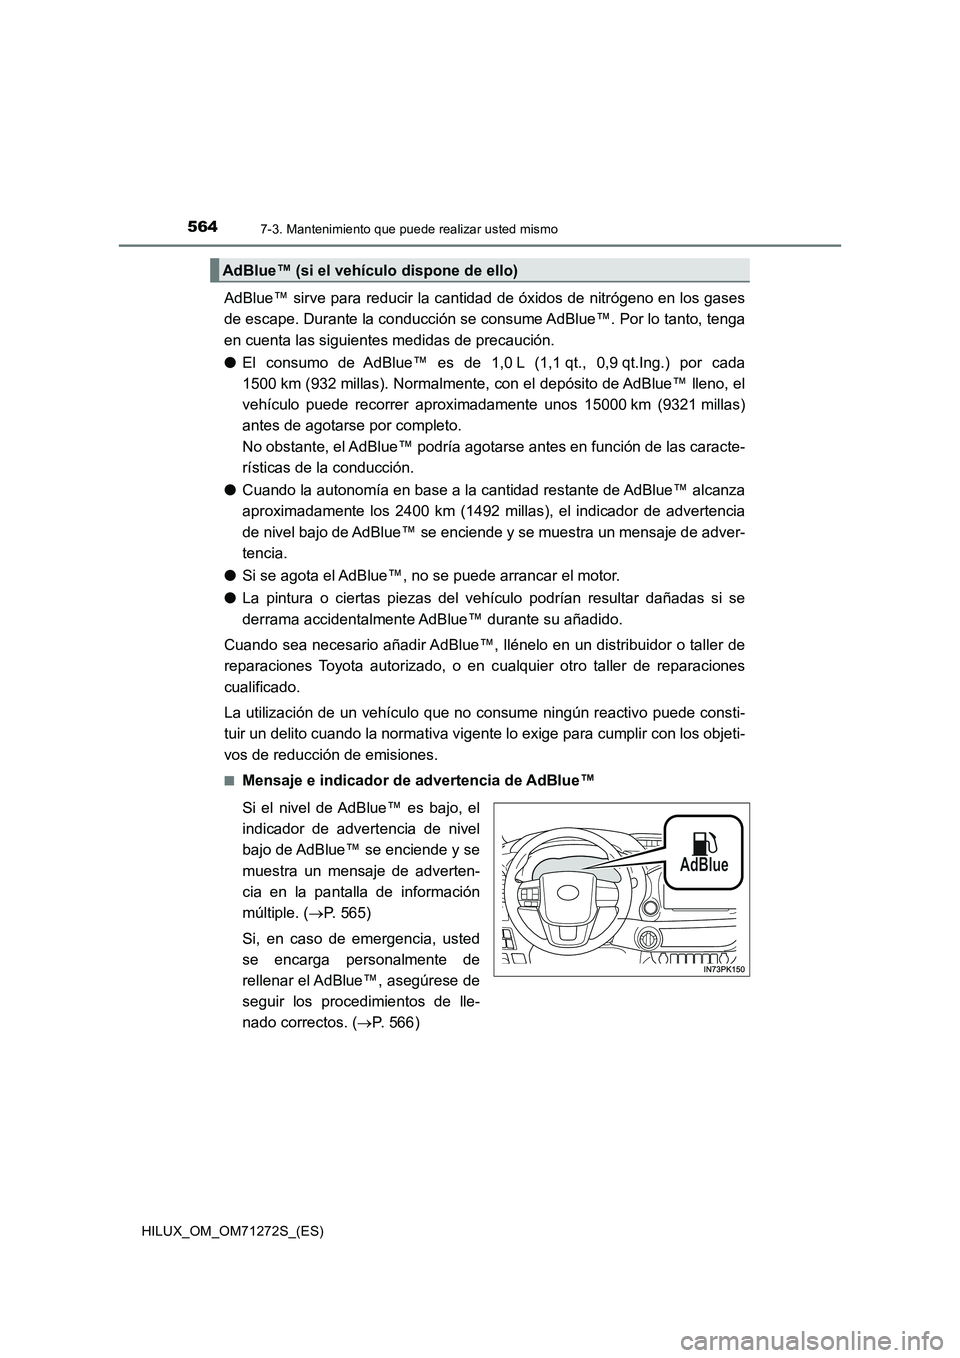 TOYOTA HILUX 2018  Manual del propietario (in Spanish) 5647-3. Mantenimiento que puede realizar usted mismo
HILUX_OM_OM71272S_(ES)
AdBlue™ sirve para reducir la cantidad de óxidos de nitrógeno en los gases
de escape. Durante la conducción se consume 